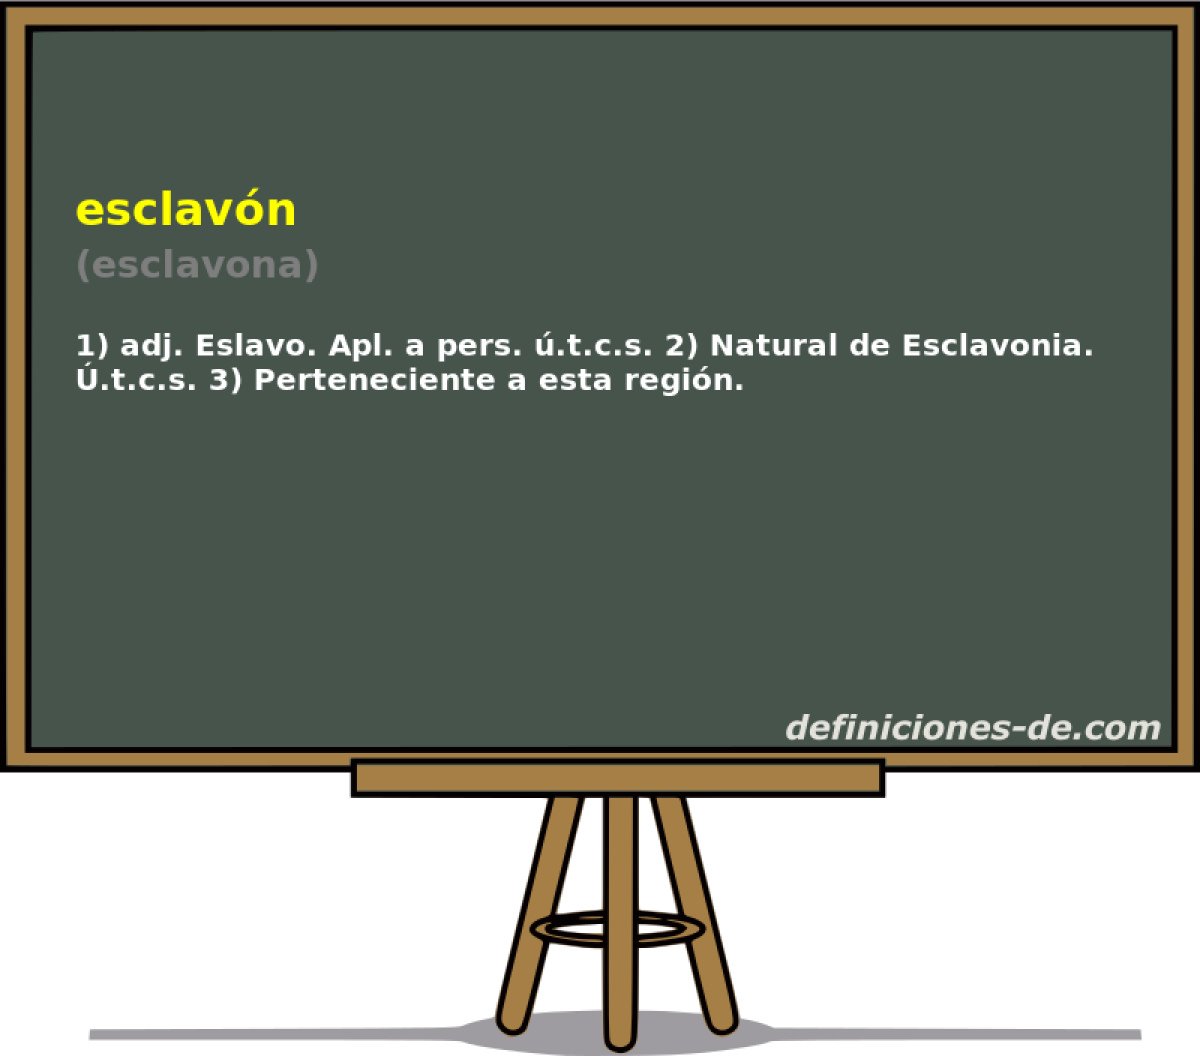 esclavn (esclavona)